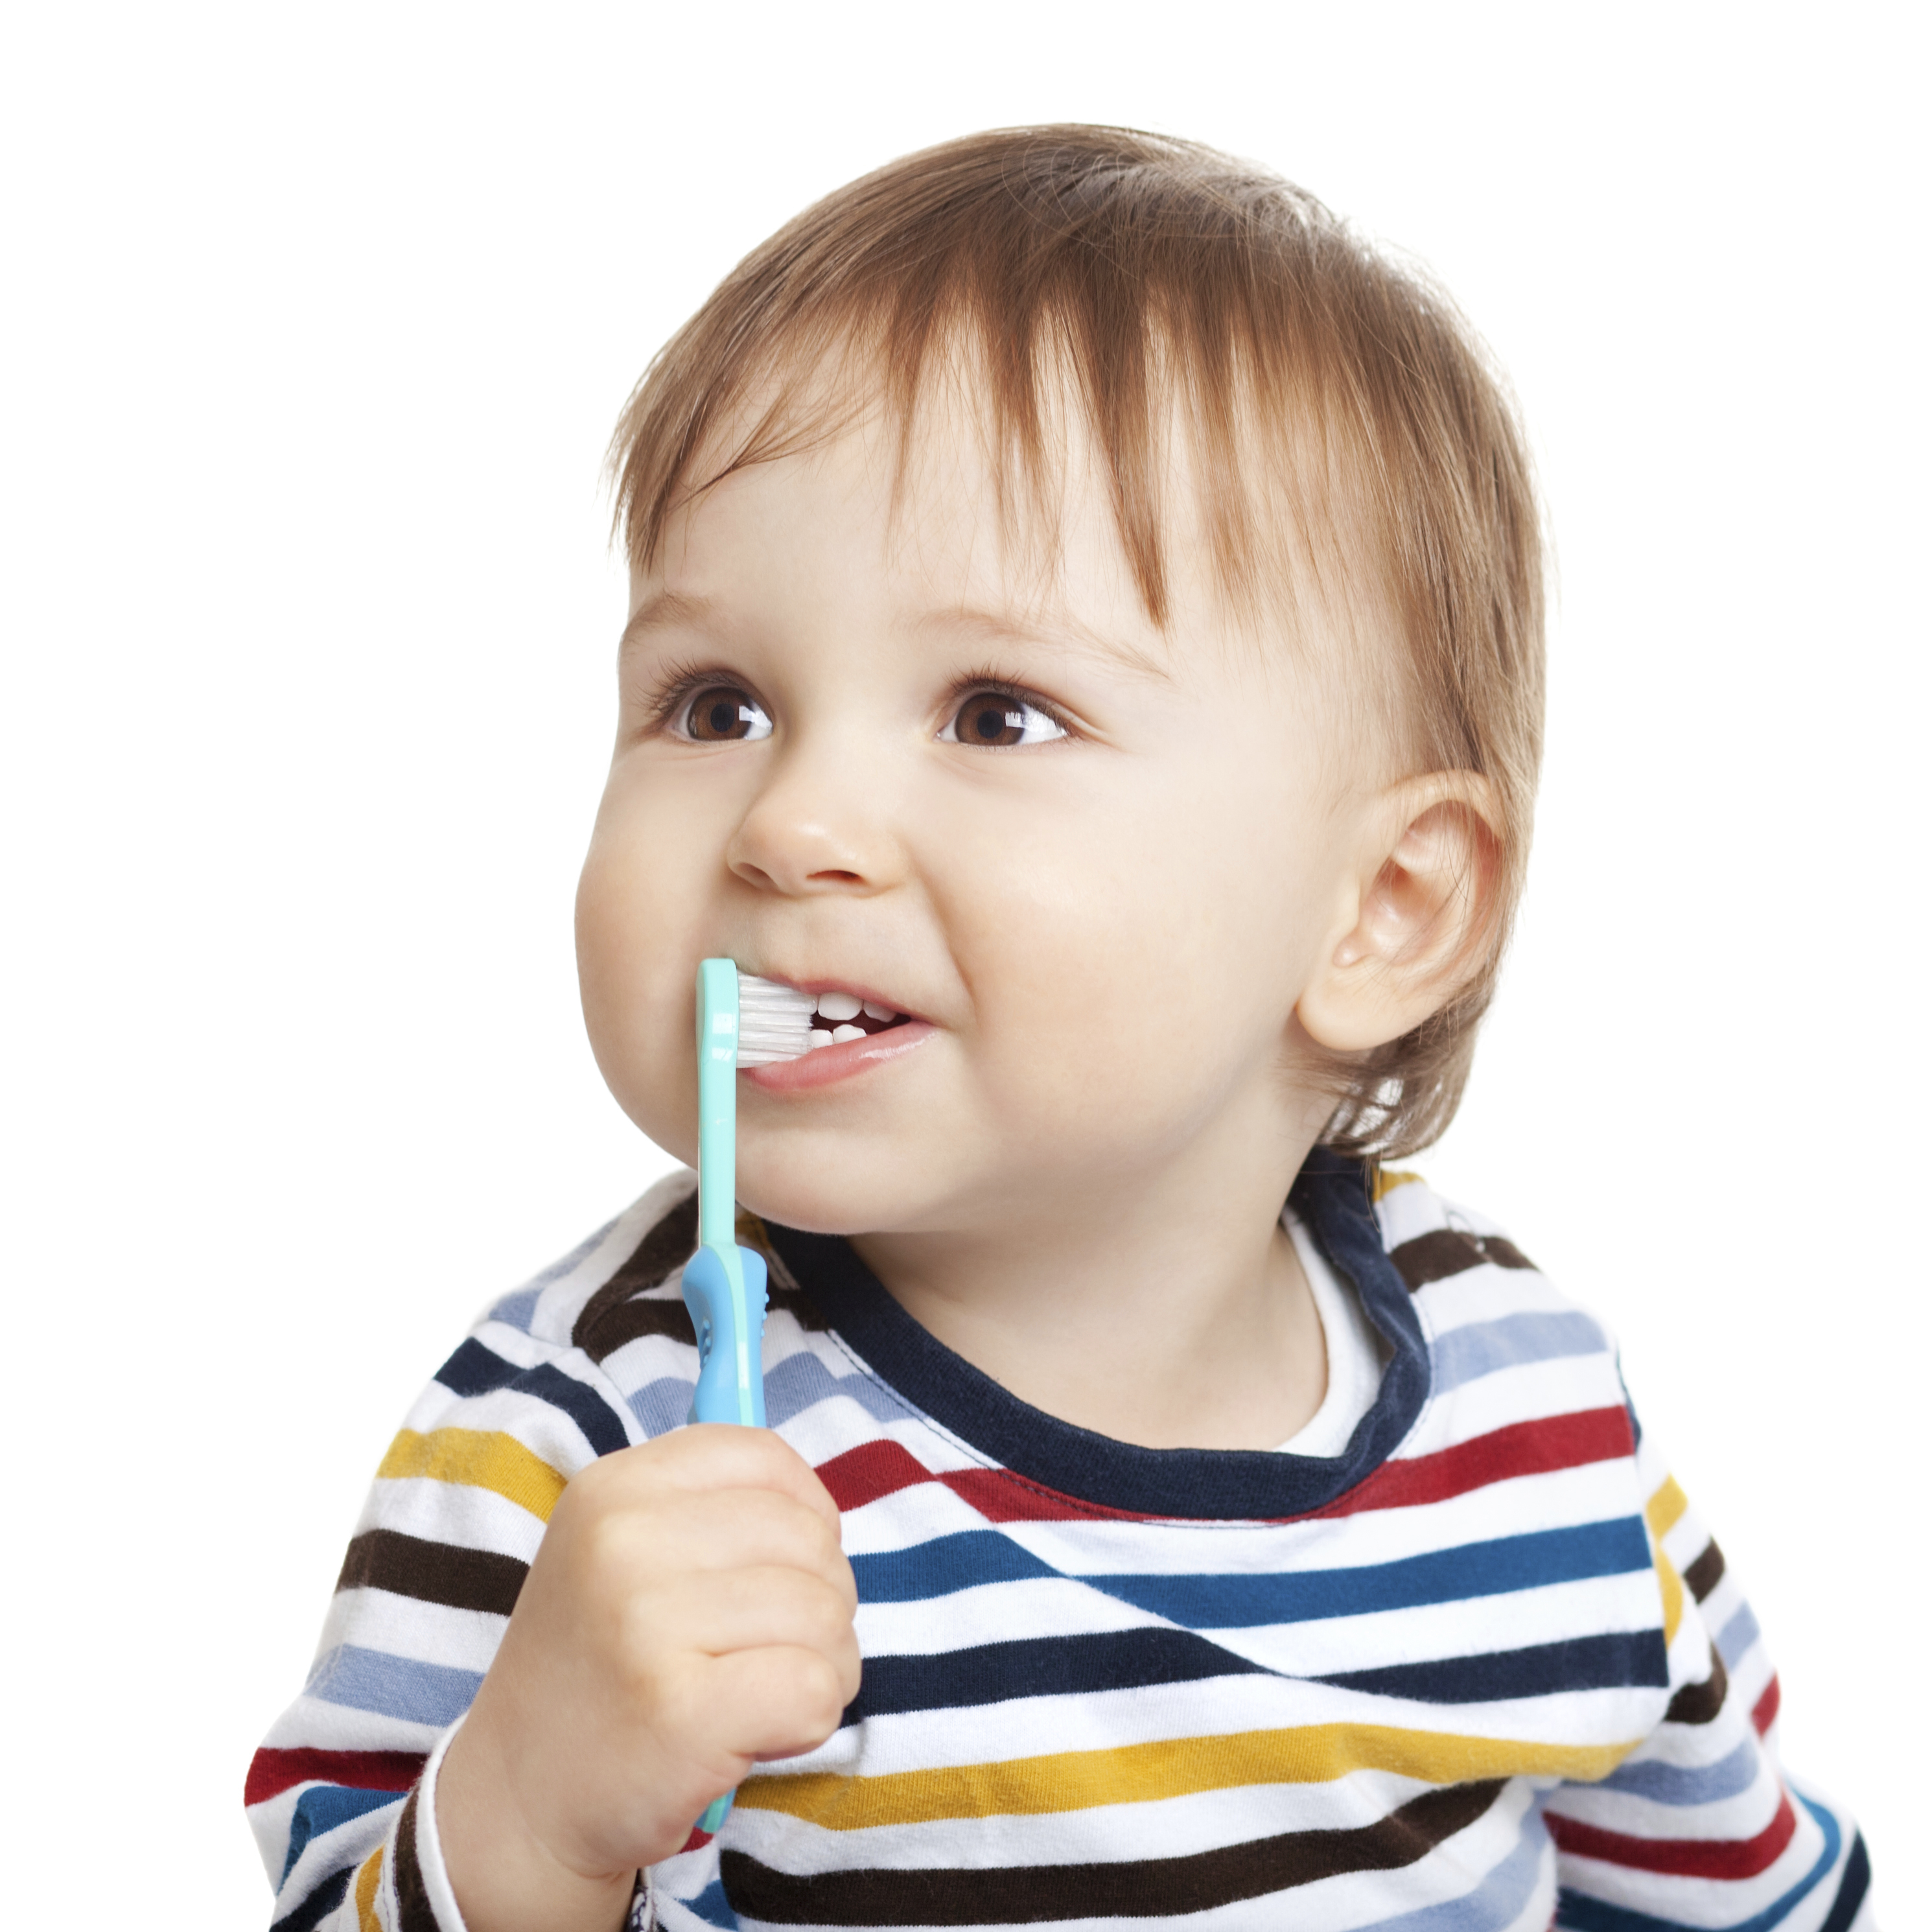 دندان کودک، مسواک زدن صحیح مخصوص کودکان